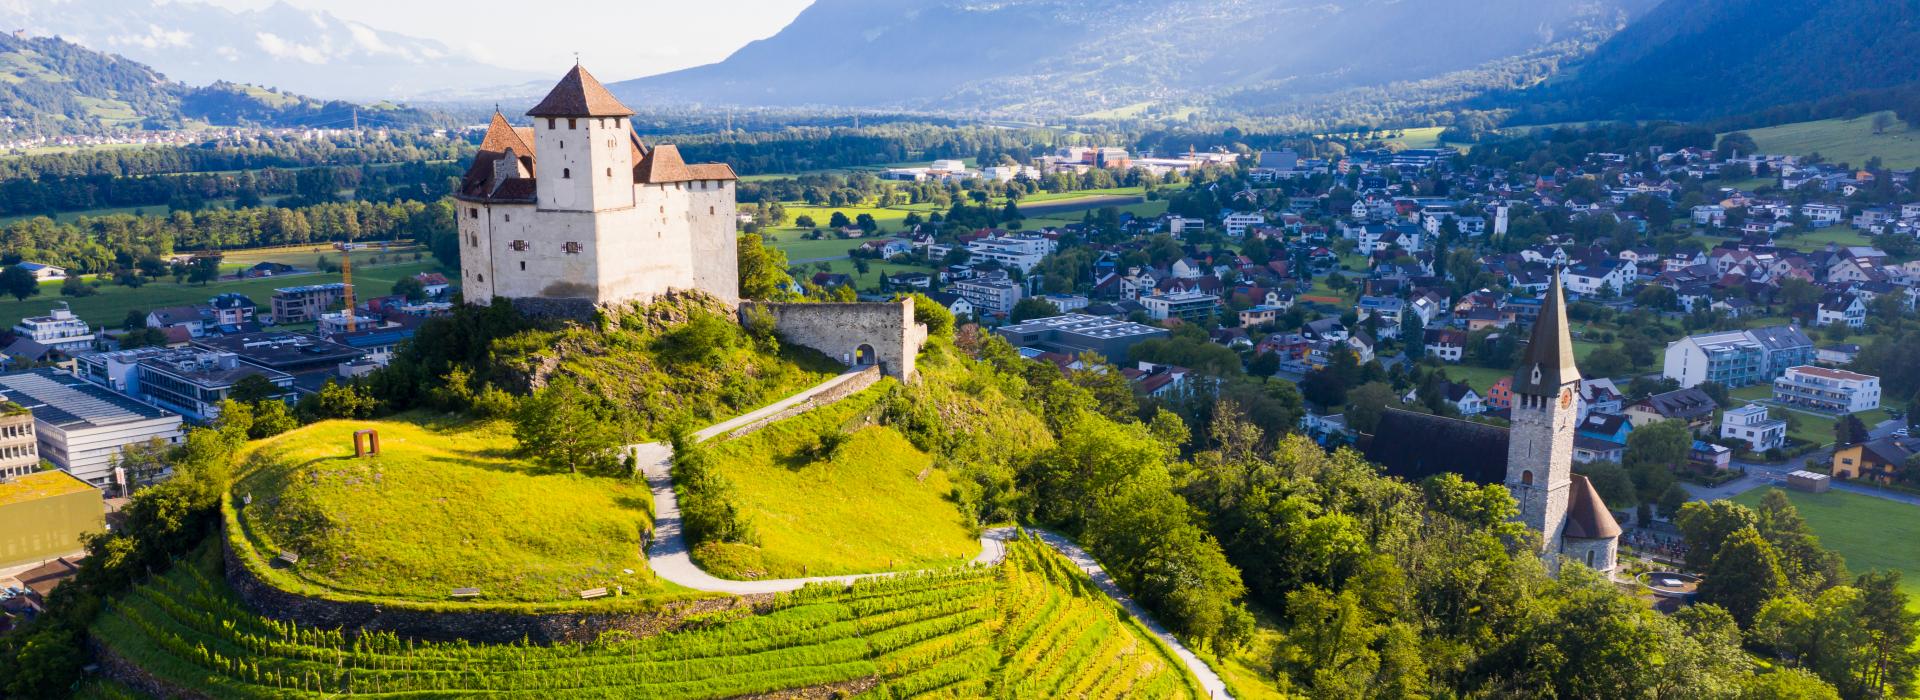 Aussicht von der Drohne von Stein Gutenberg Schloss auf grünem Hügel auf Hintergrund mit Kleinstadt Balzers, Liechtenstein